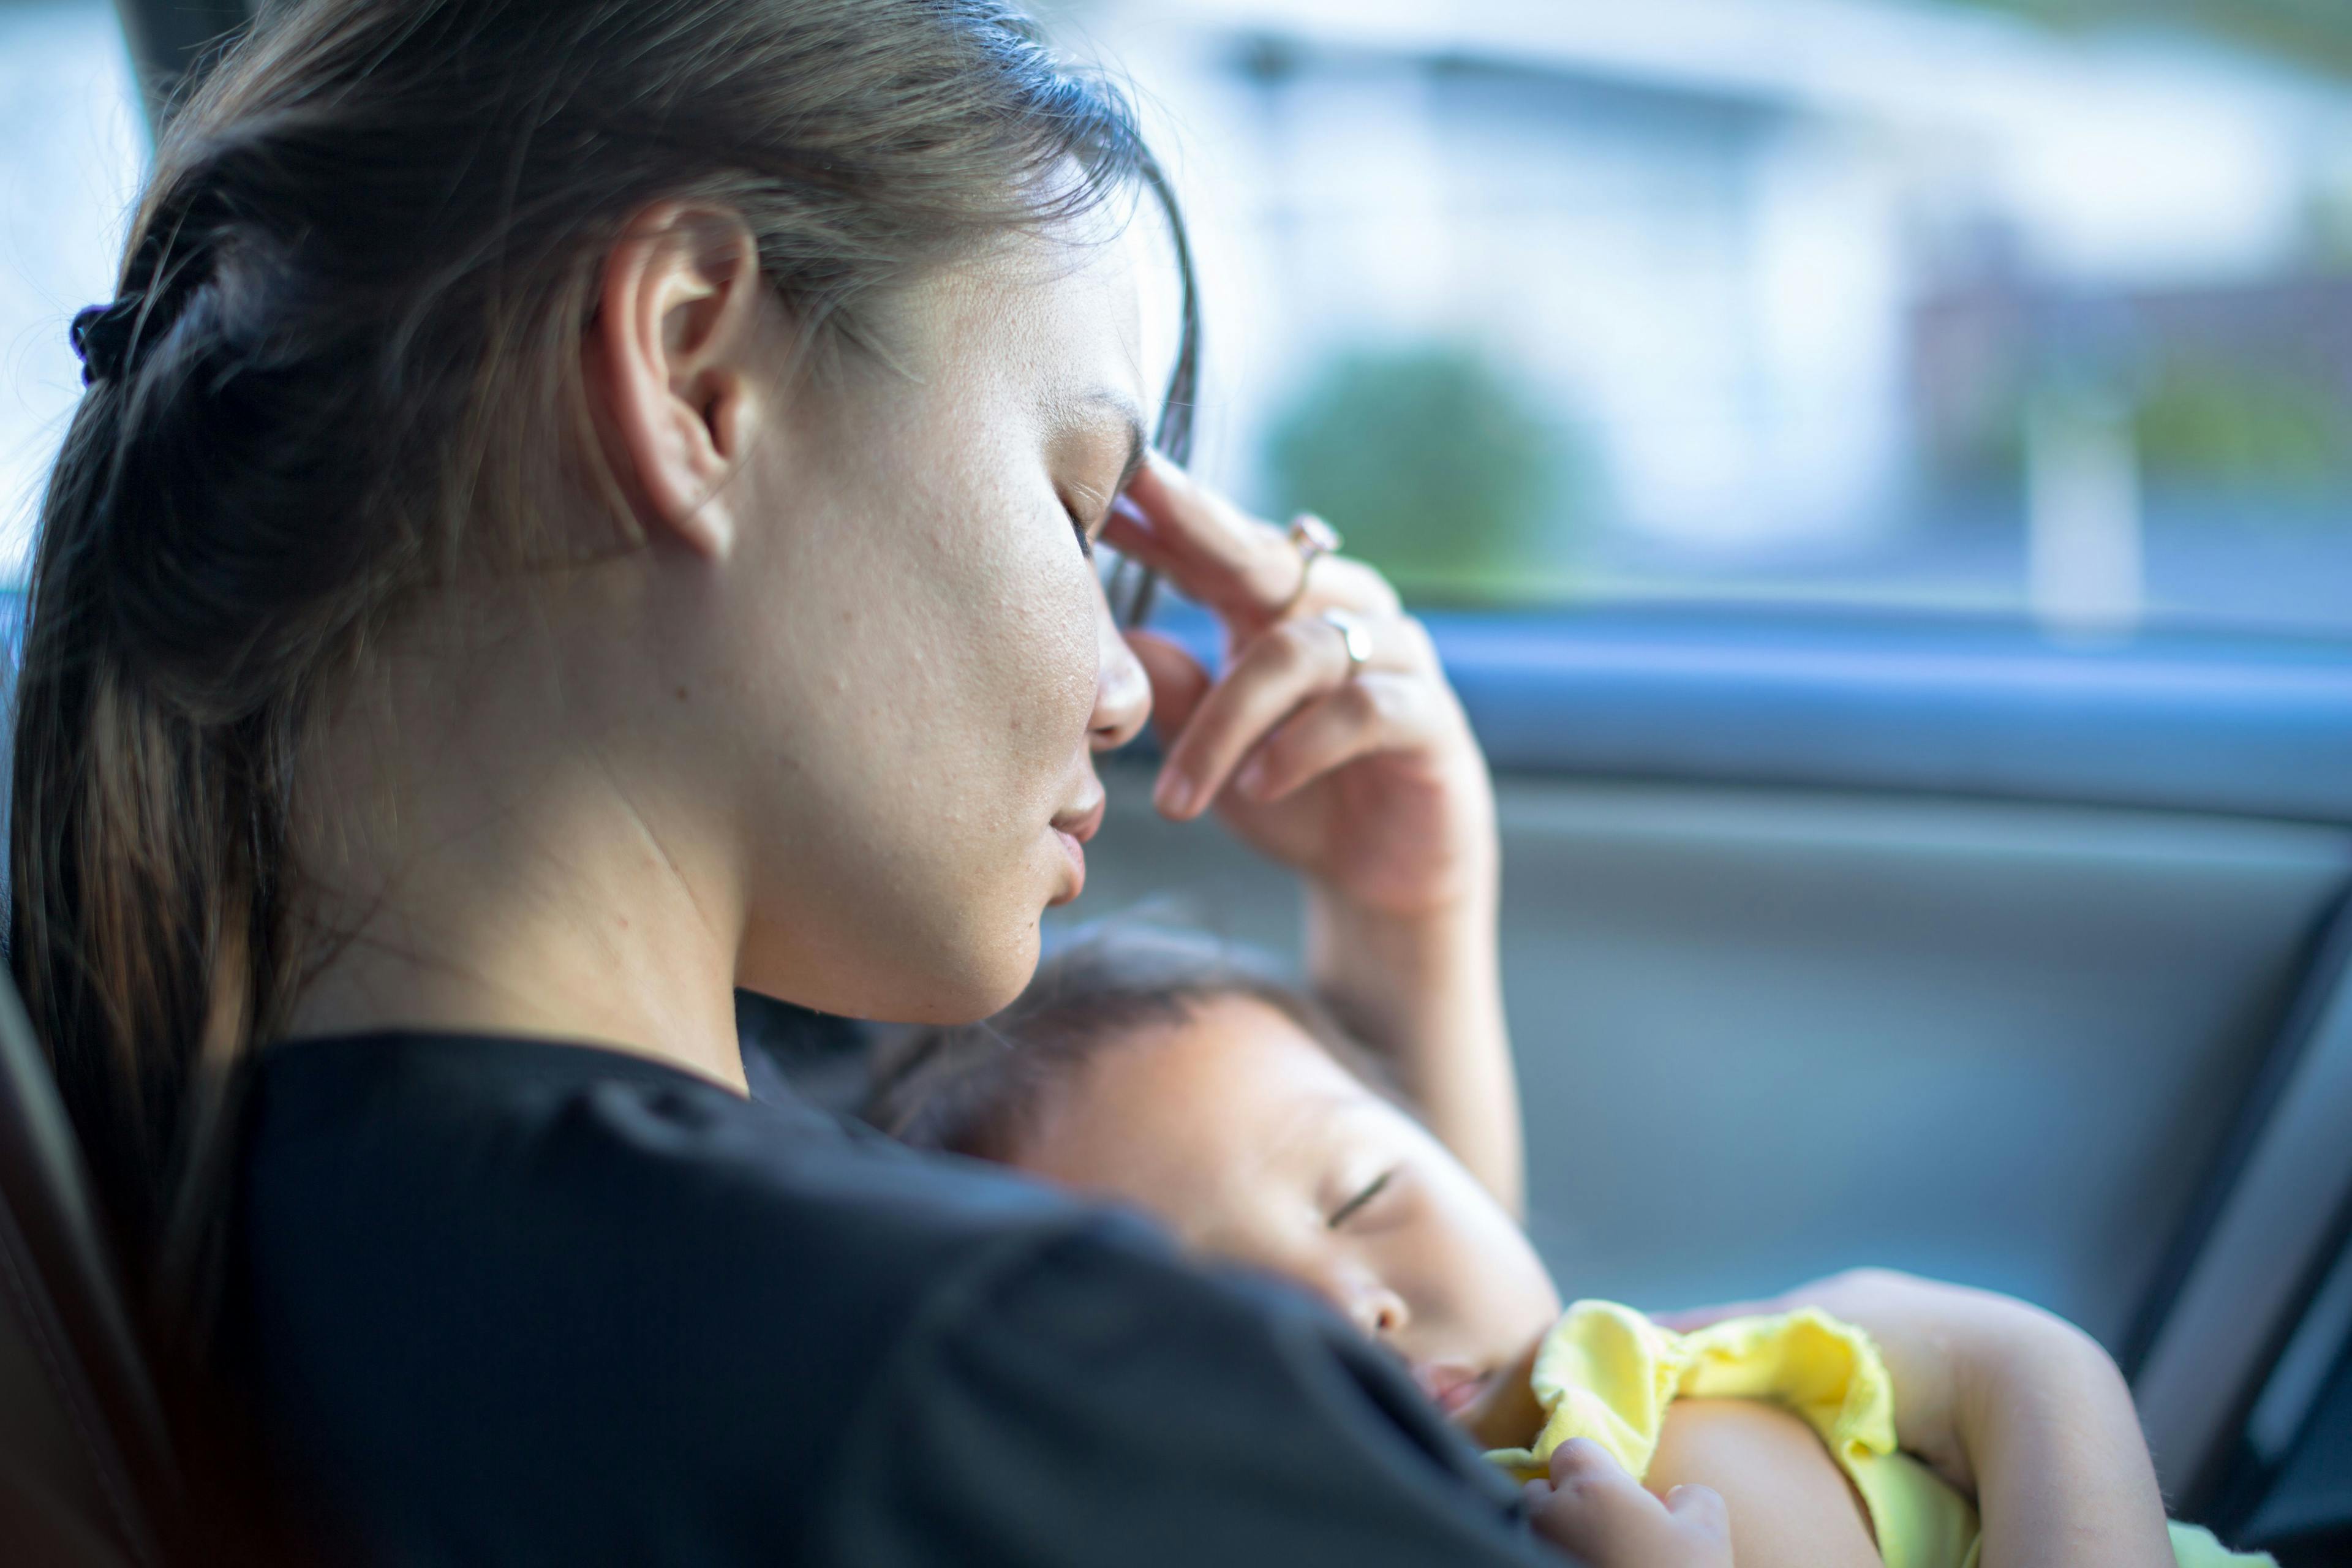 FDA gives nod to first drug for postpartum depression